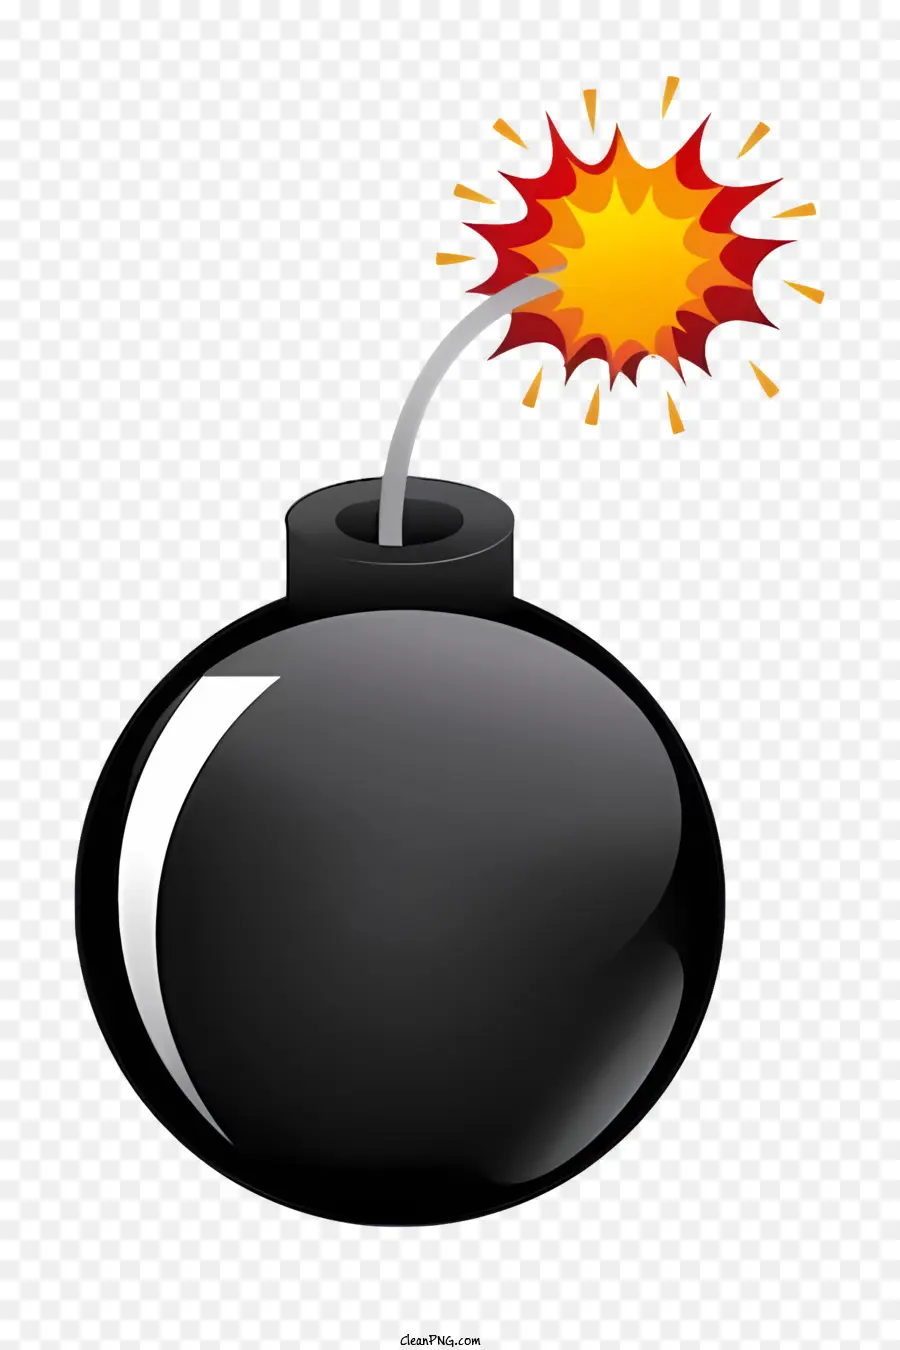 timer bomb bomb flare explosive danger